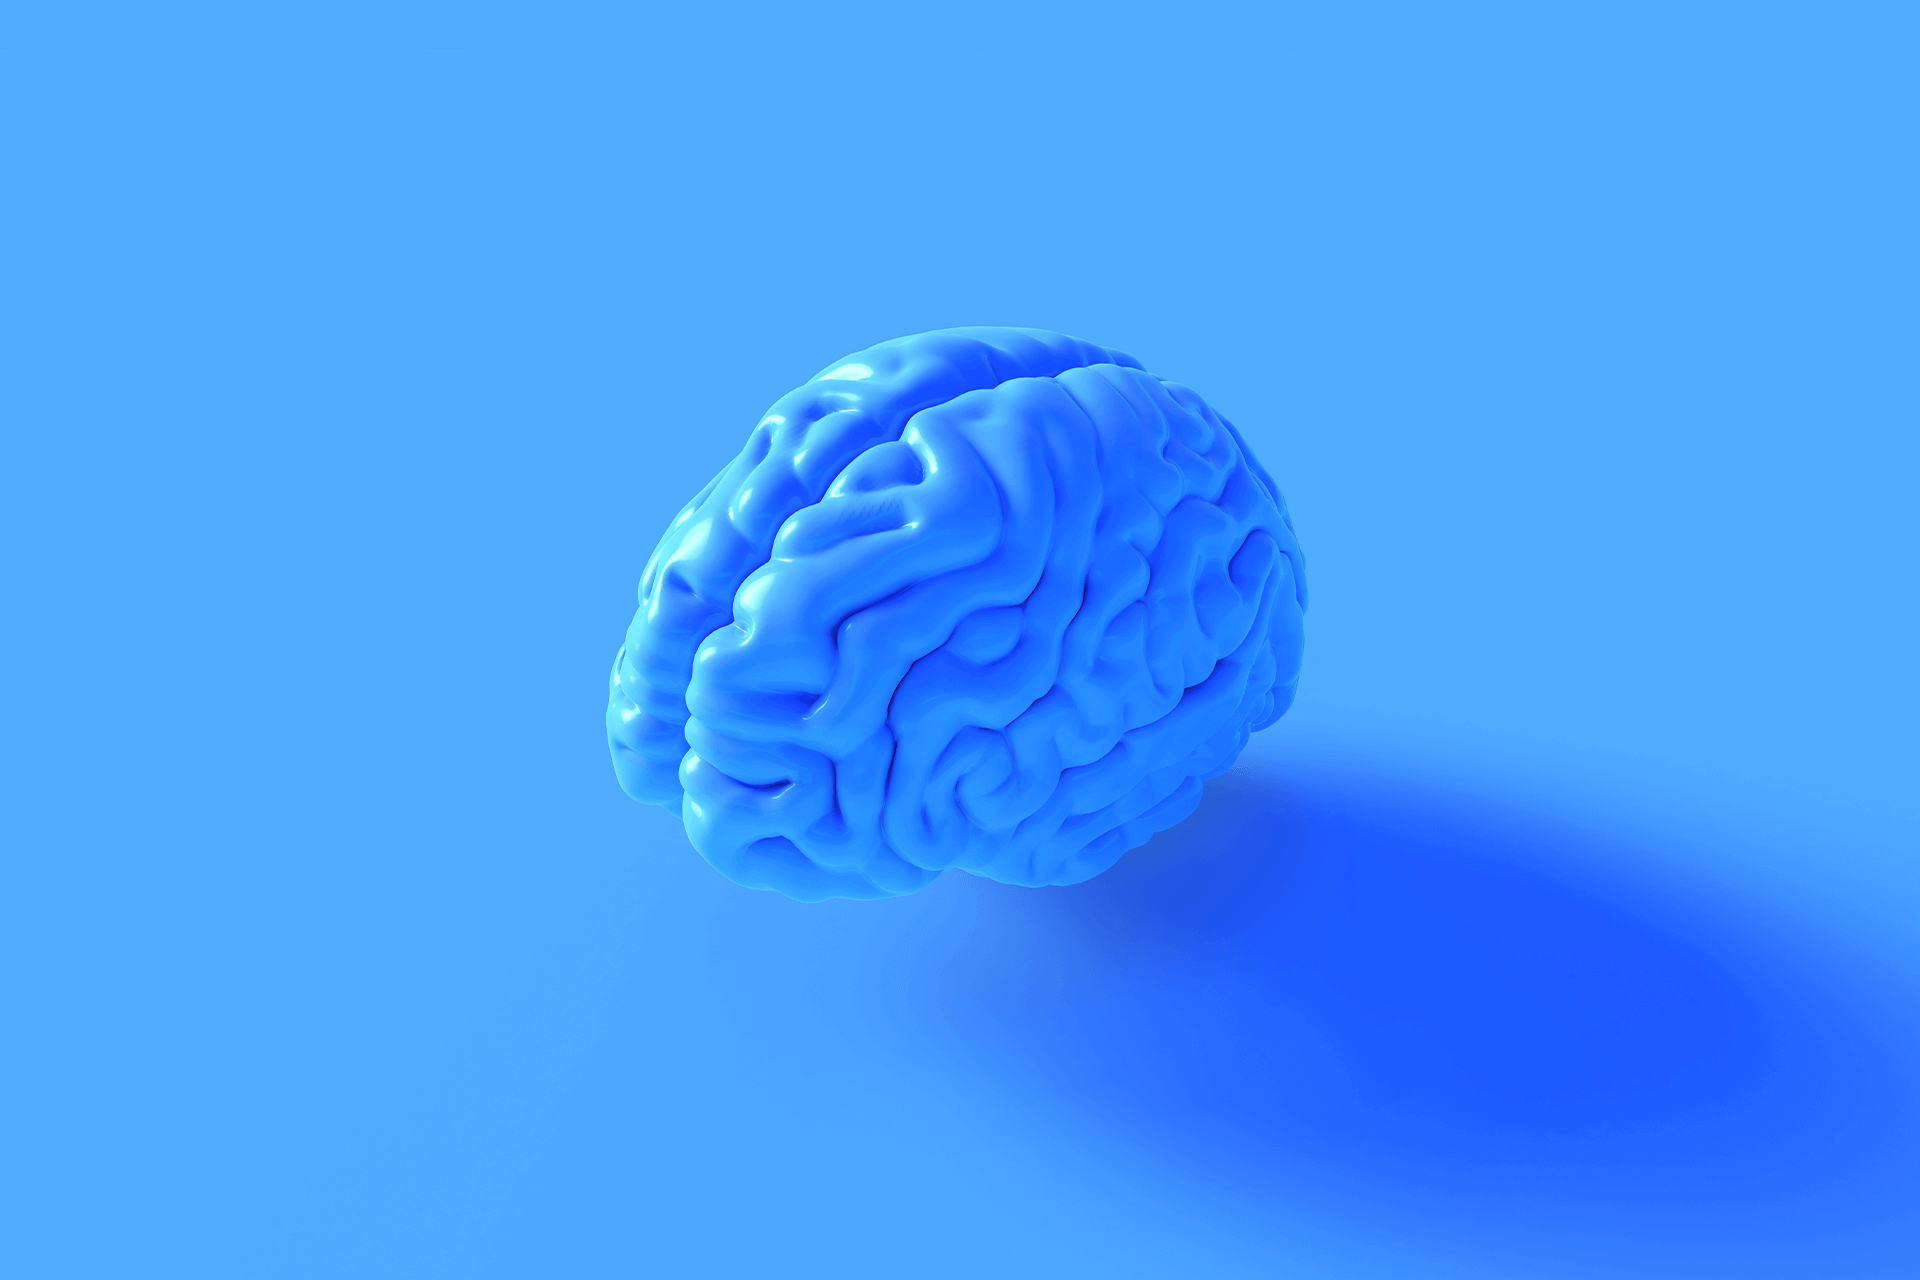 Ein Modell des menschlichen Gehirns, das blau ist und vor einem blauen Hintergrund steht. Die perfekte Wahl für das Titelbild zu unserem Blog über Market Intelligence.